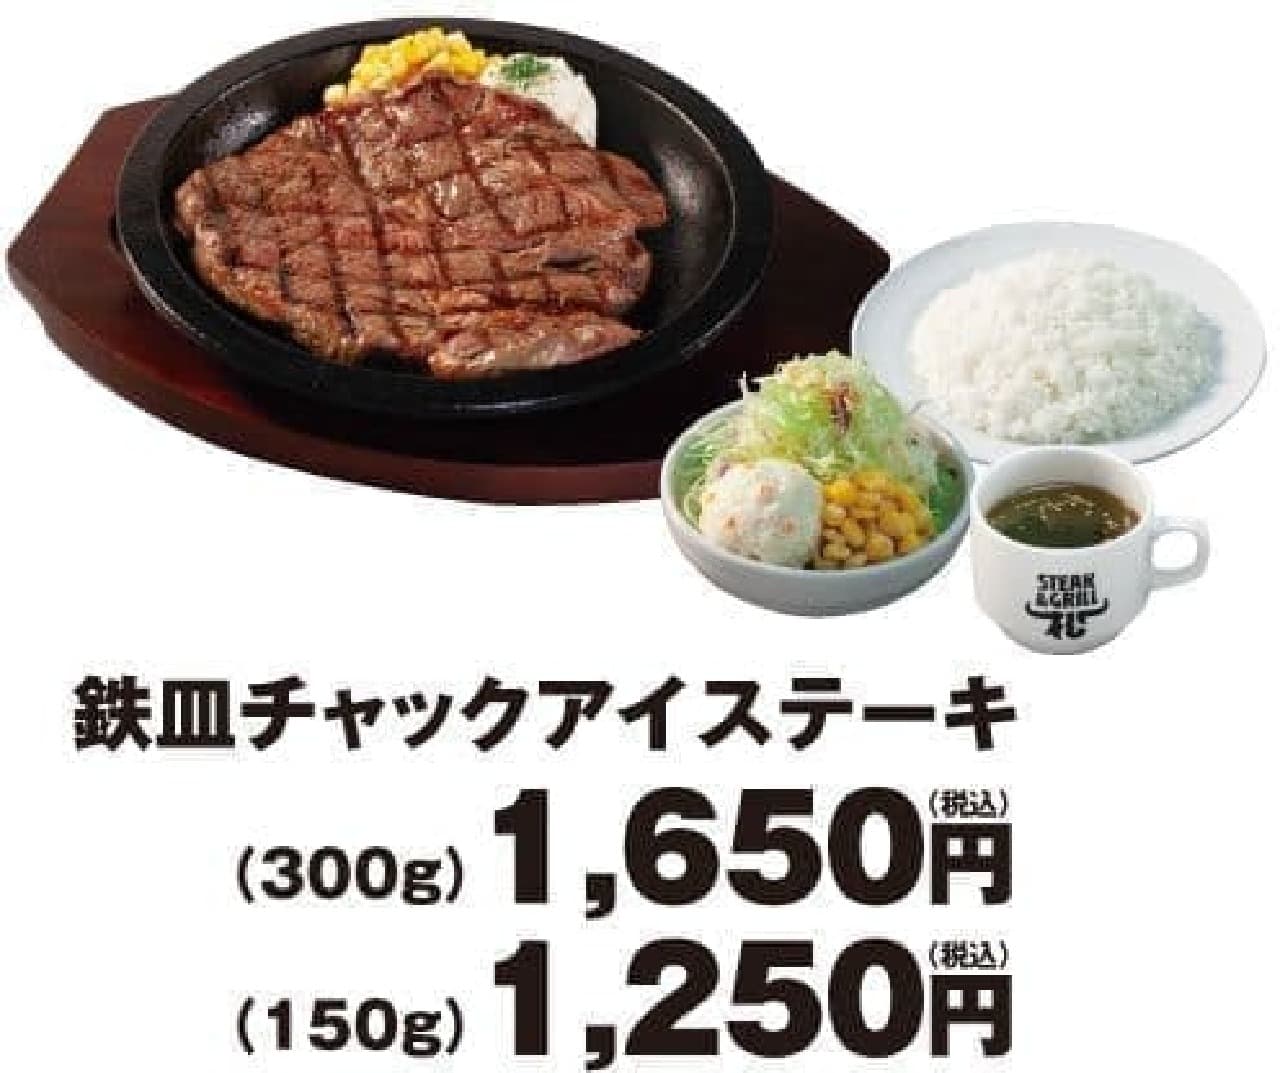 Steak shop Matsu "Iron plate chuck eye steak"